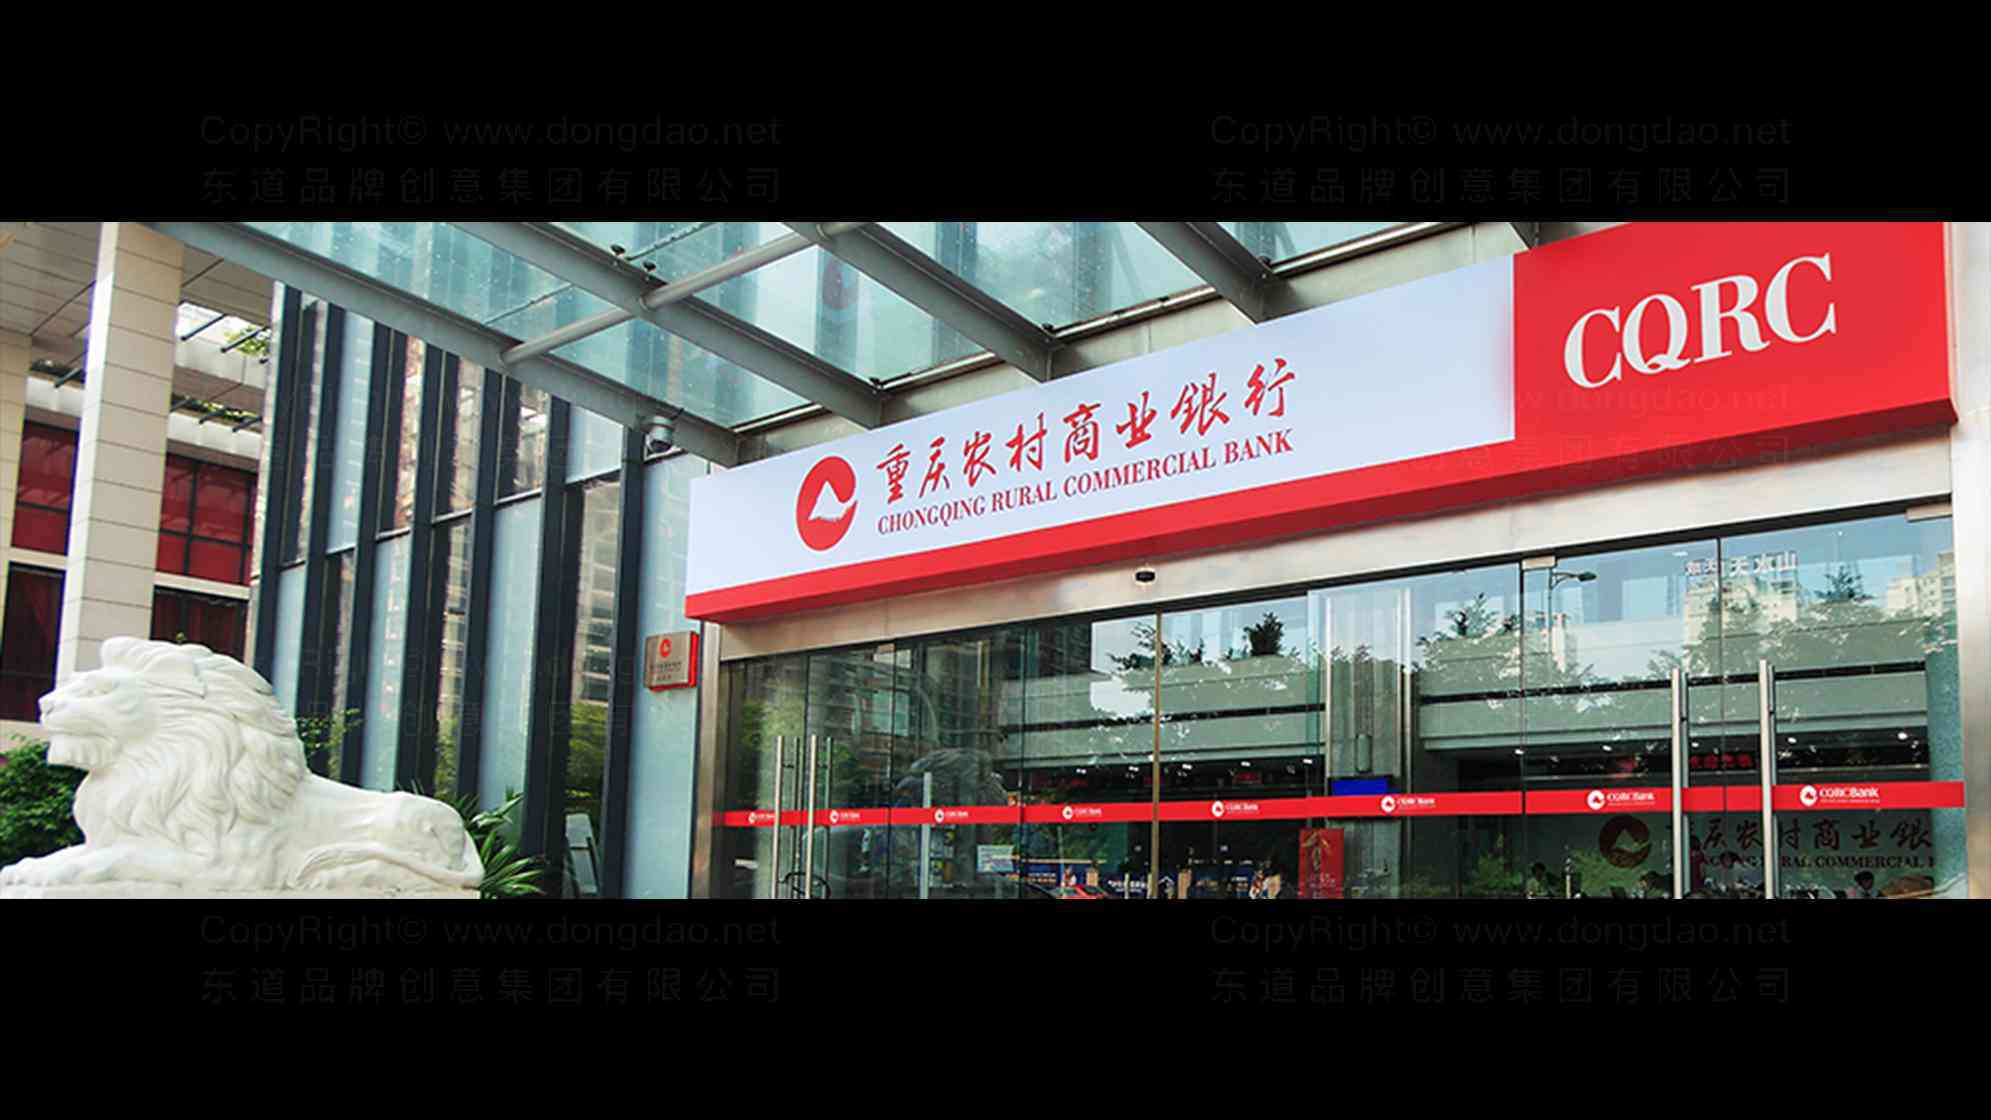 重庆农村商业银行品牌logo设计图片素材_9